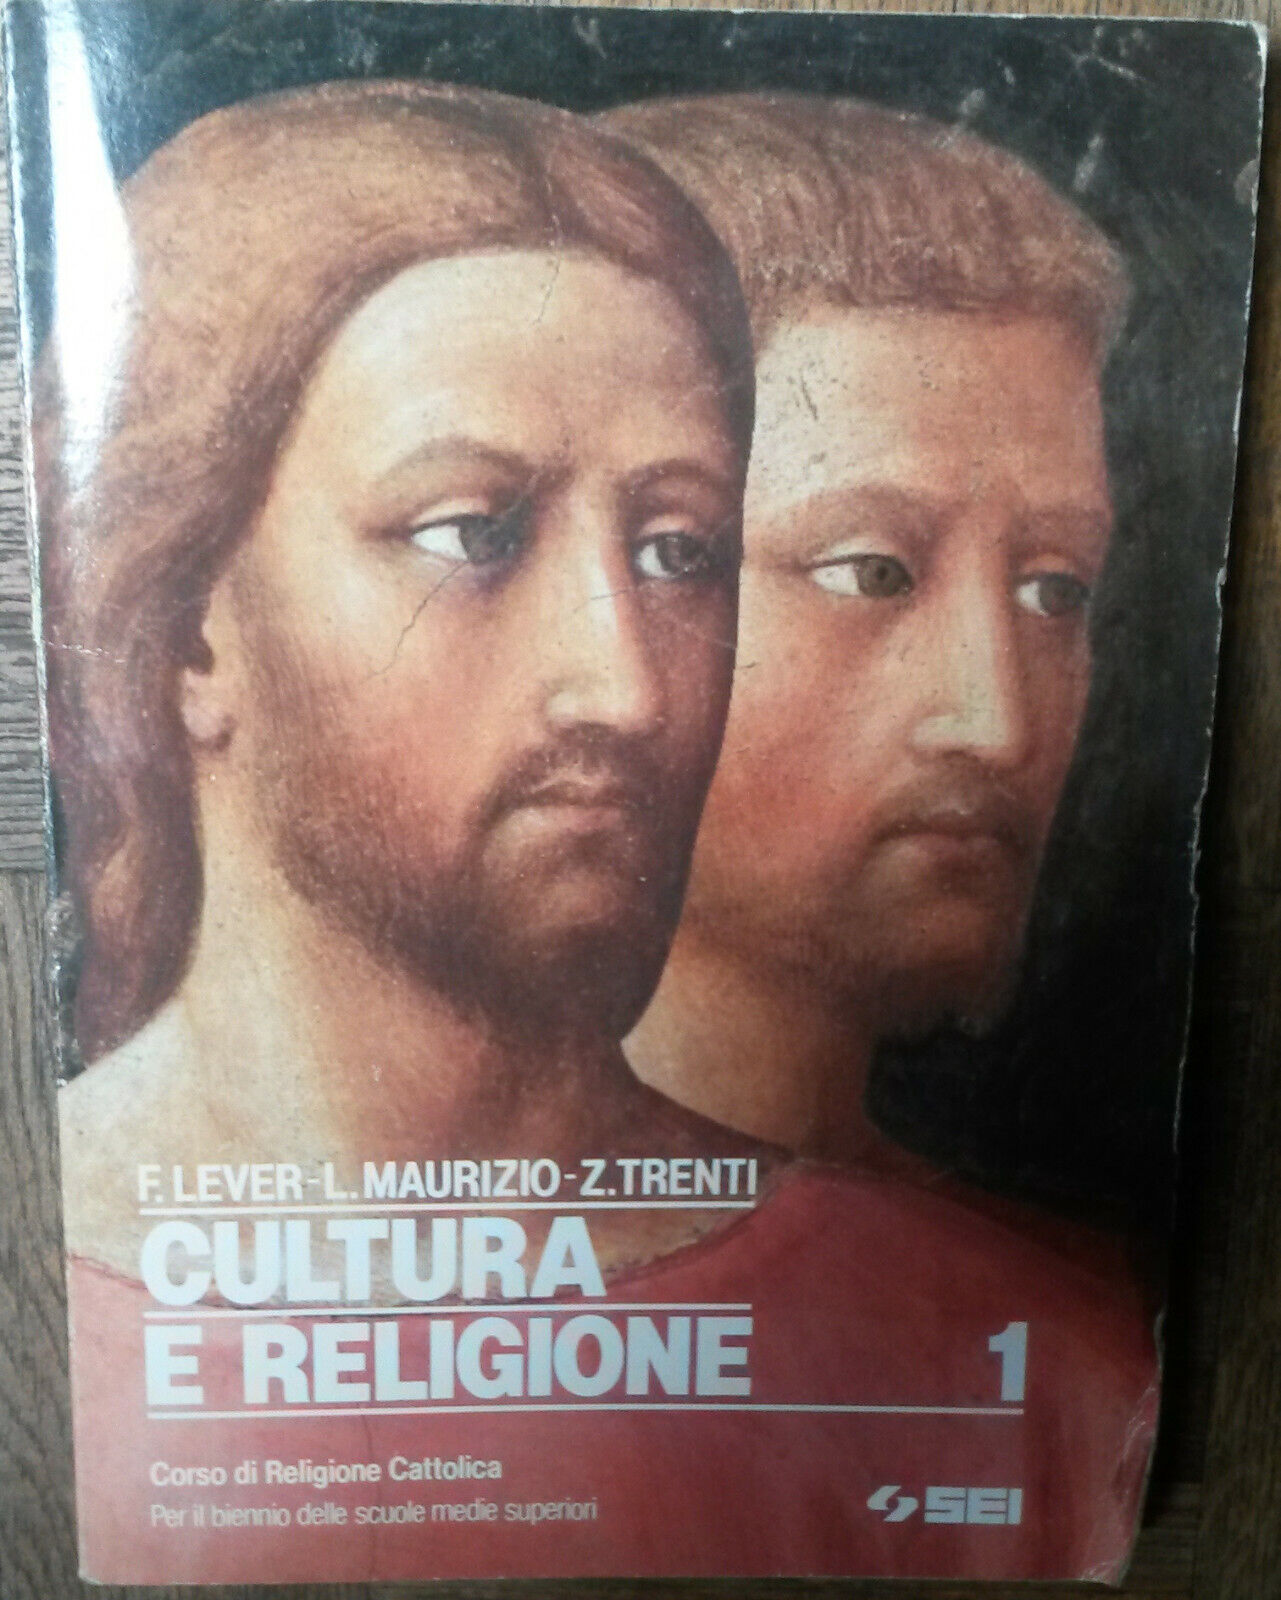 Cultura e religione Vol.1 - F.Lever, L. Maurizio, Z. Trenti - SEI,1993 - R